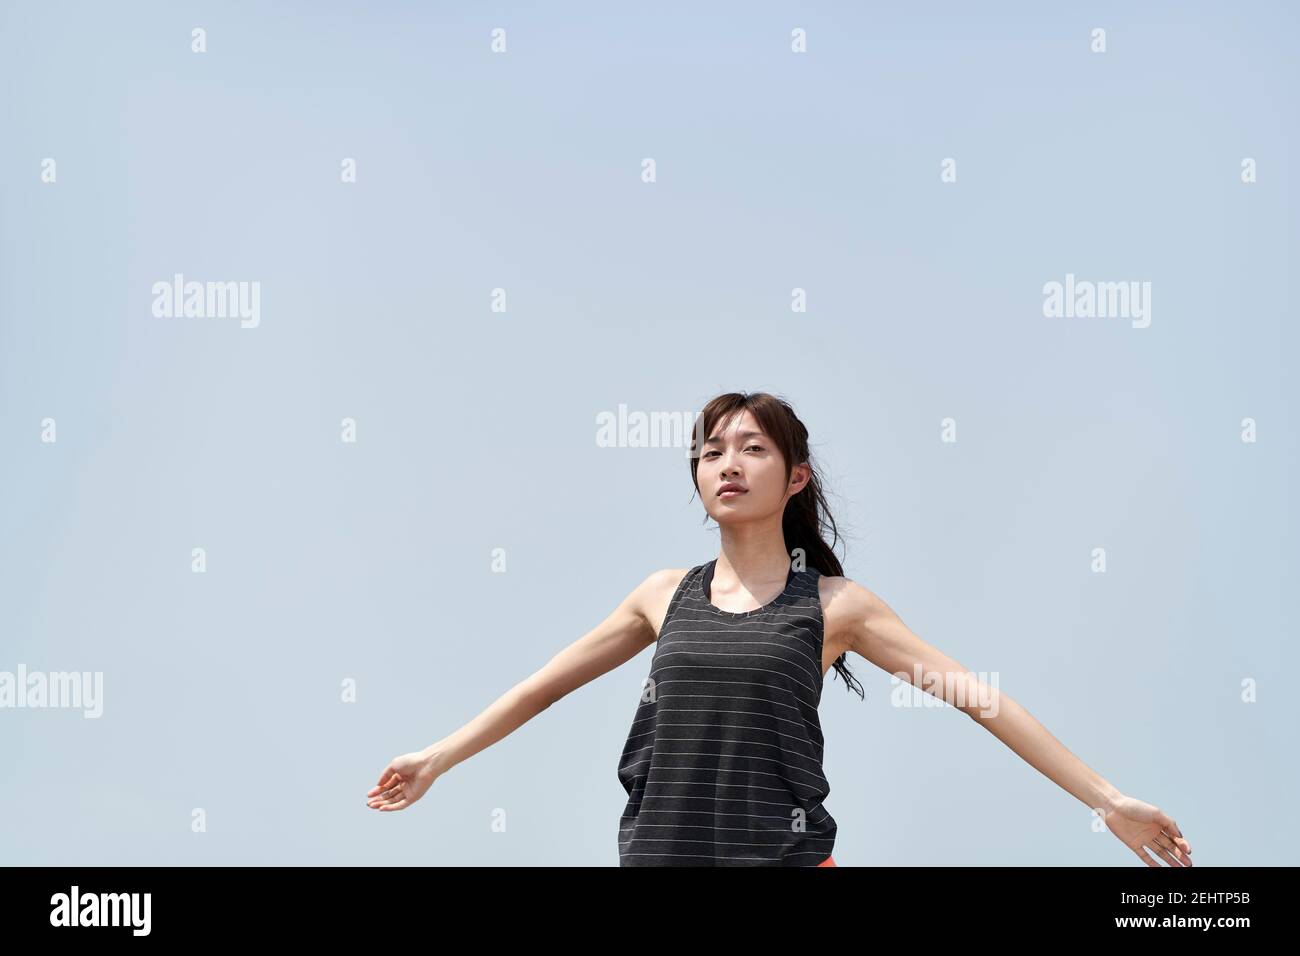 Junge asiatische Frau in Sportbekleidung im Freien gegen blauen Himmel stehen Mit offenen Armen Stockfoto